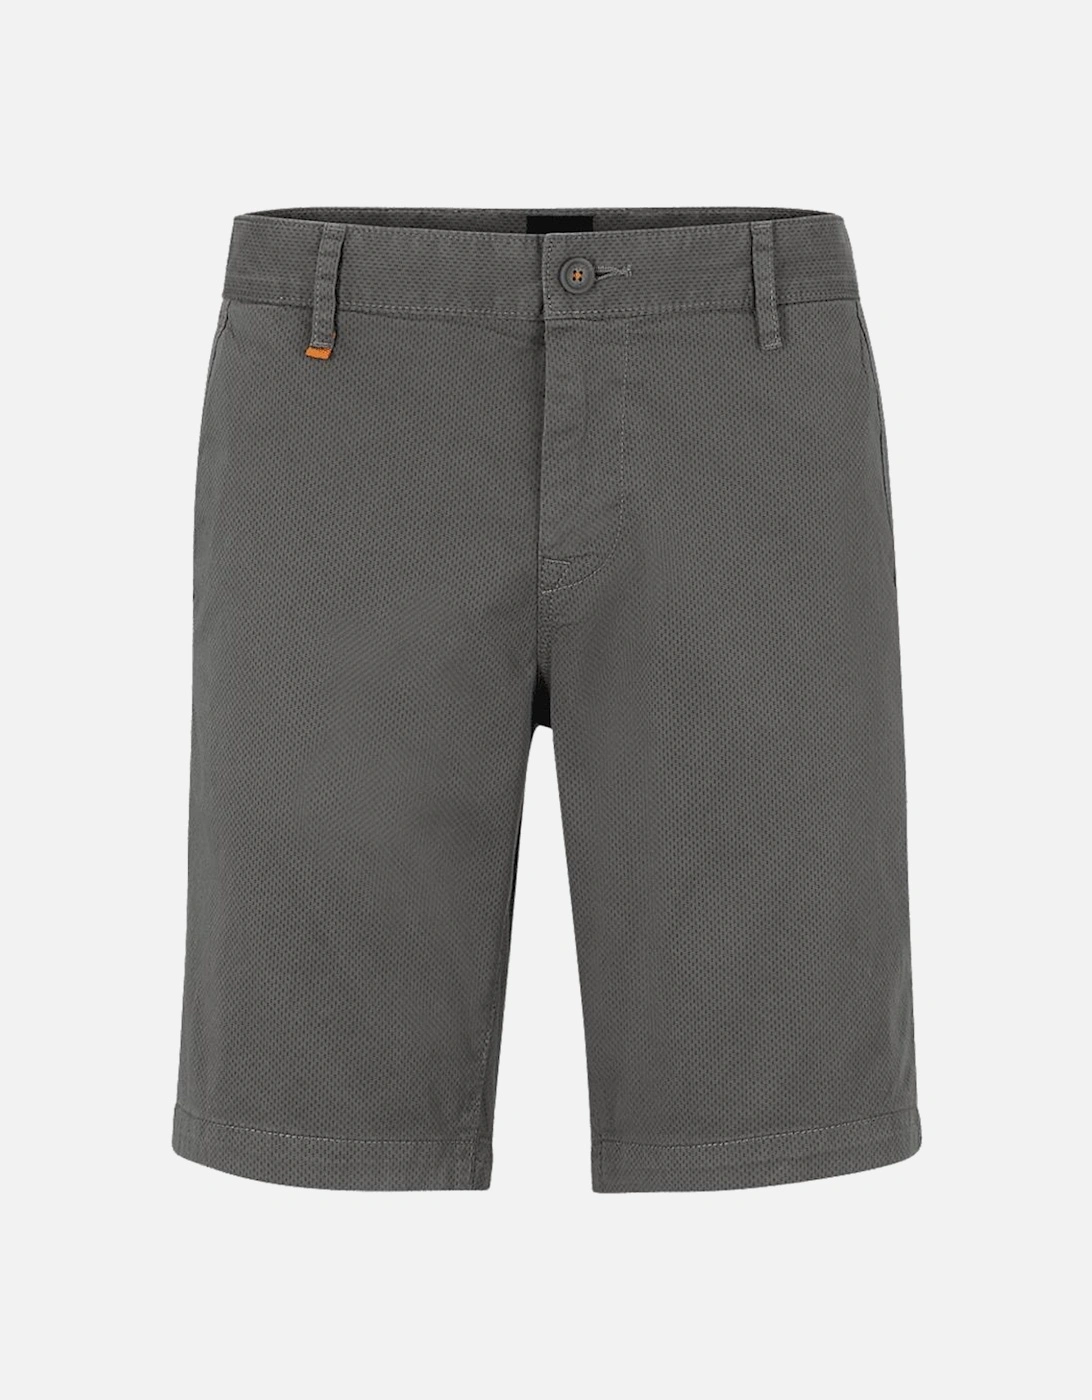 Schino Pique Cotton Grey Chino Shorts, 3 of 2